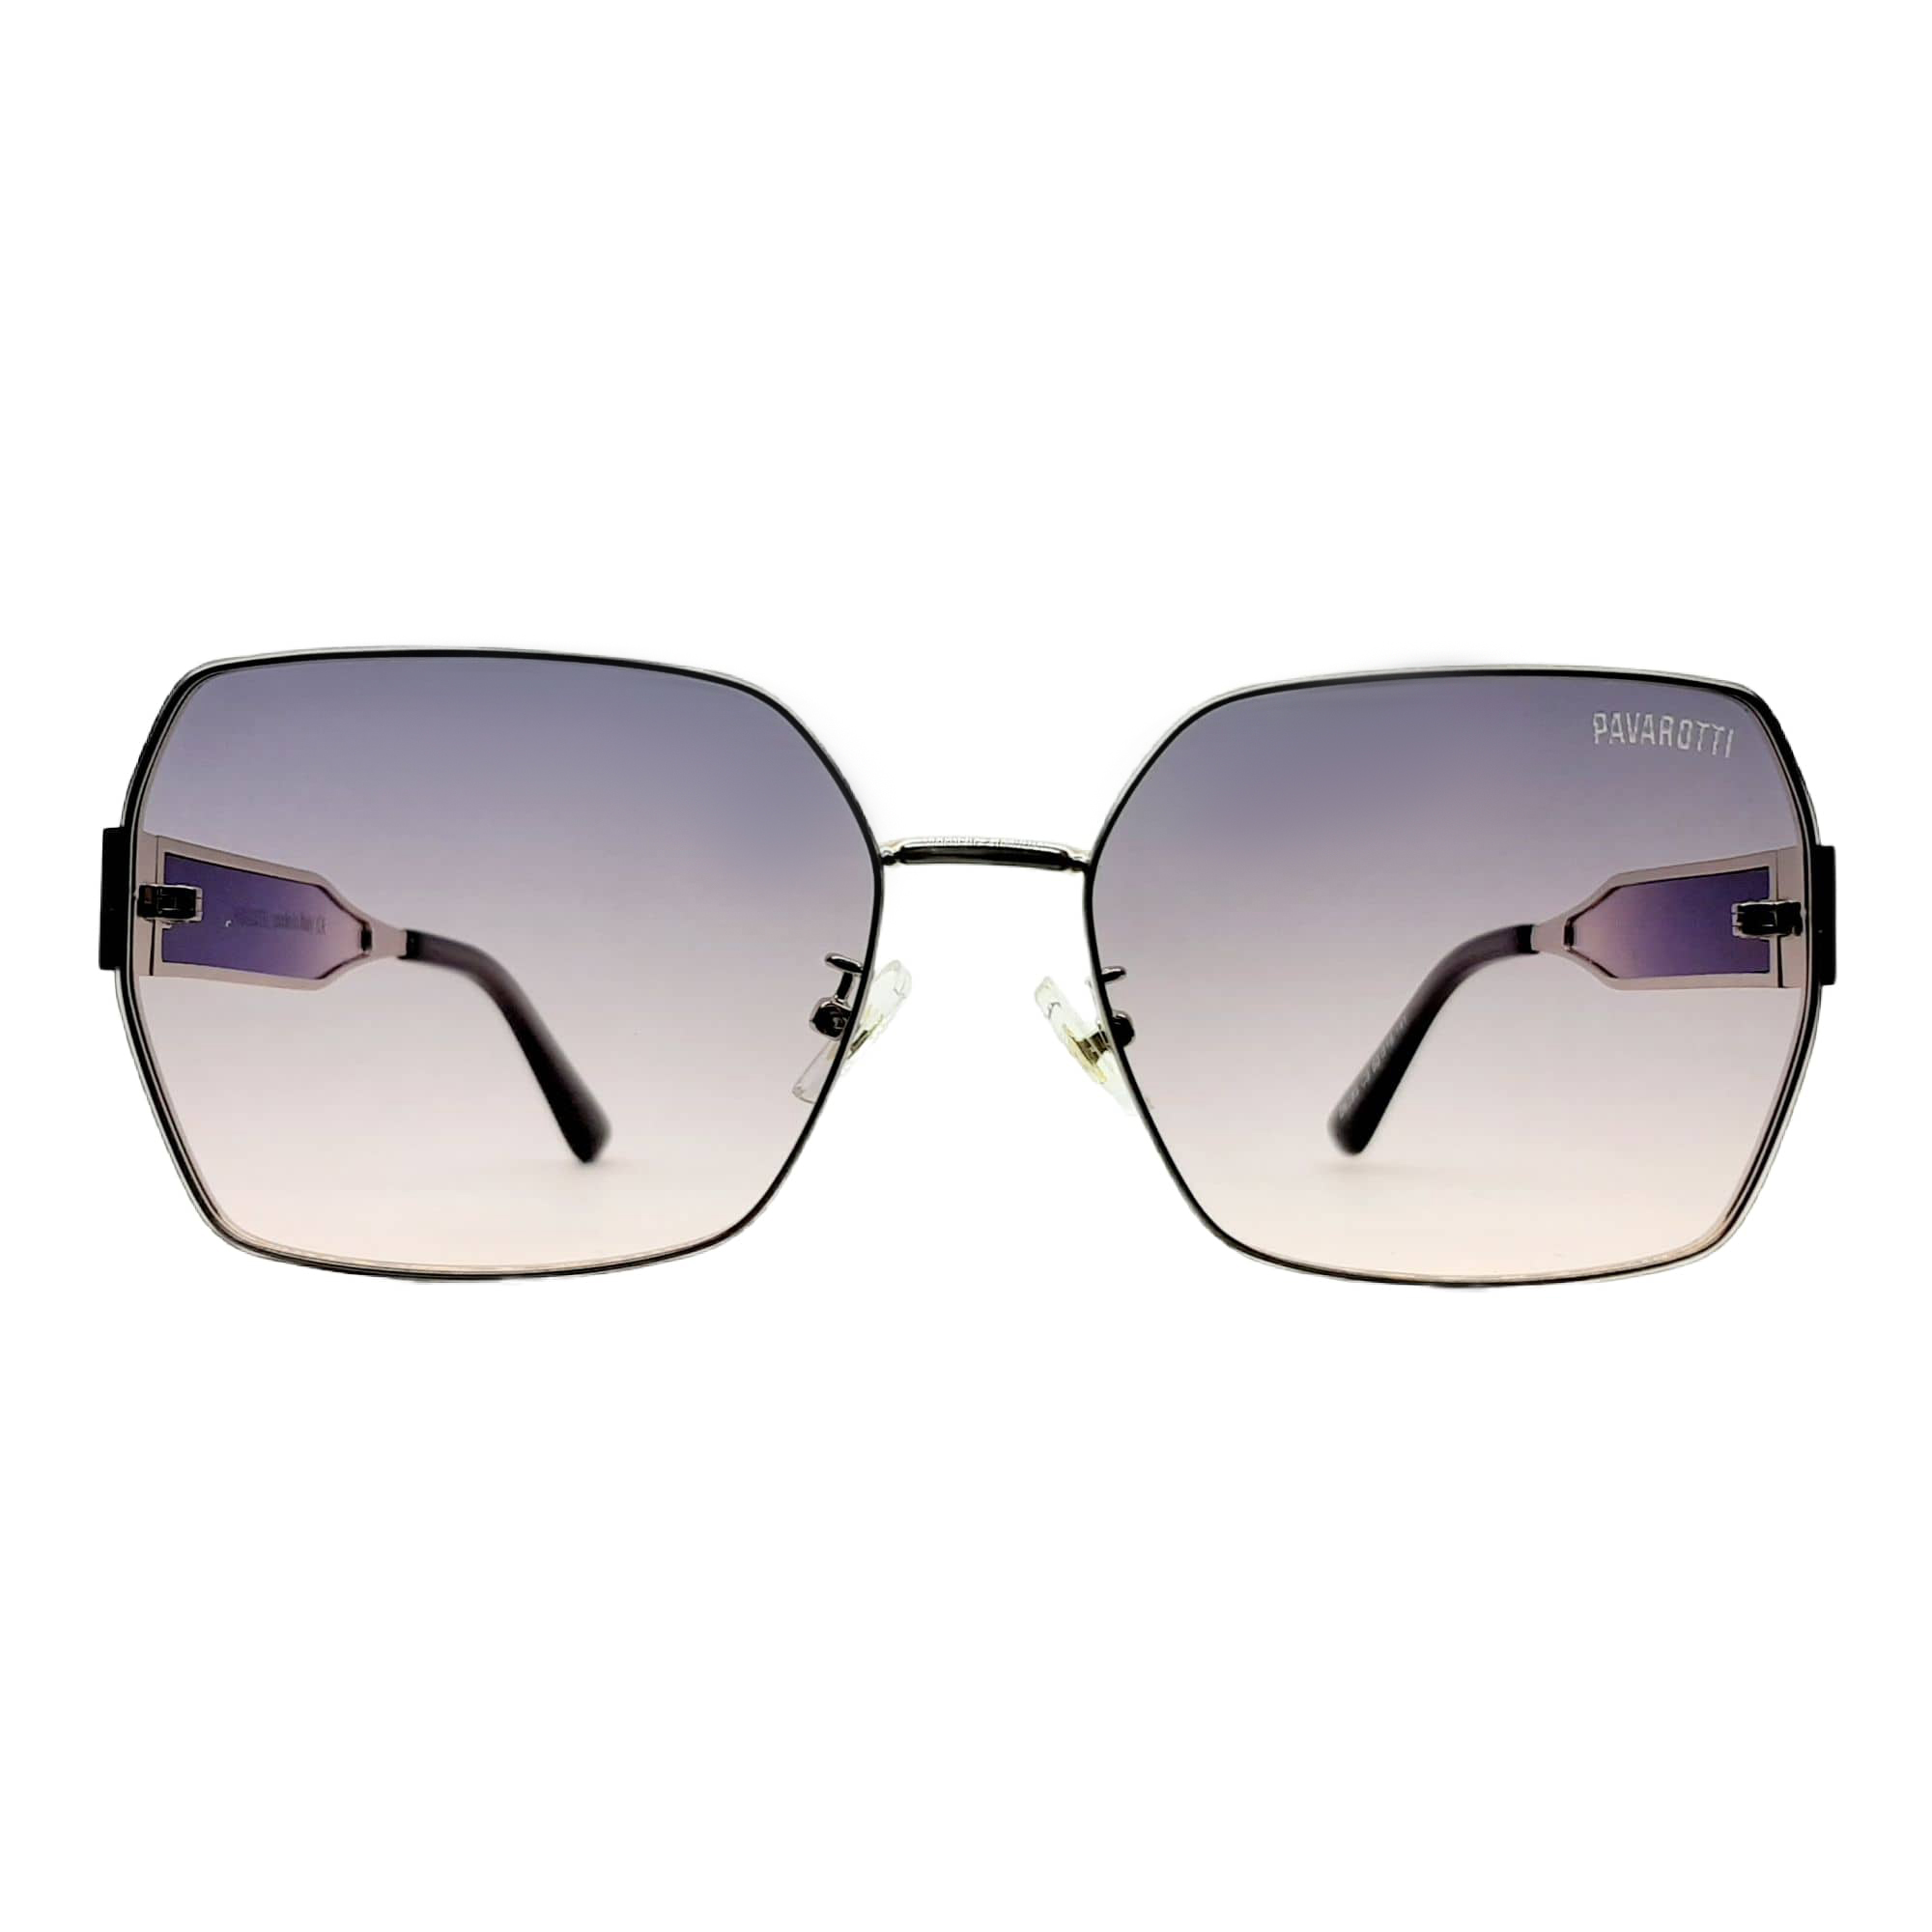 عینک آفتابی پاواروتی مدل D6280c9